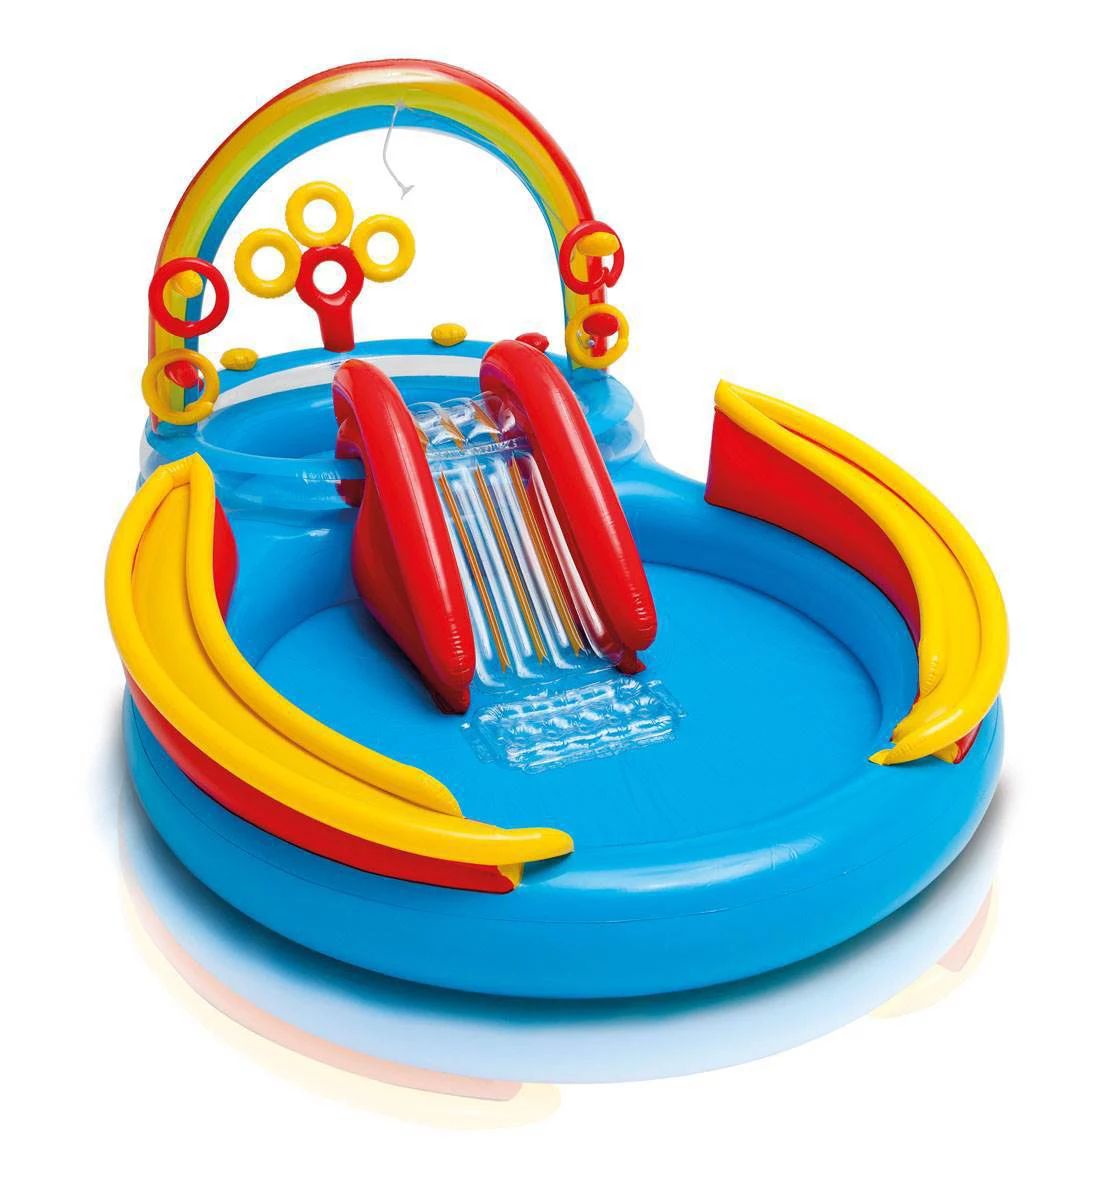 Intex 9,75 x 6,3 x 53 дюйма Rainbow Slide Kids Play Надувной бассейн с кольцом в центре Intex фотографии